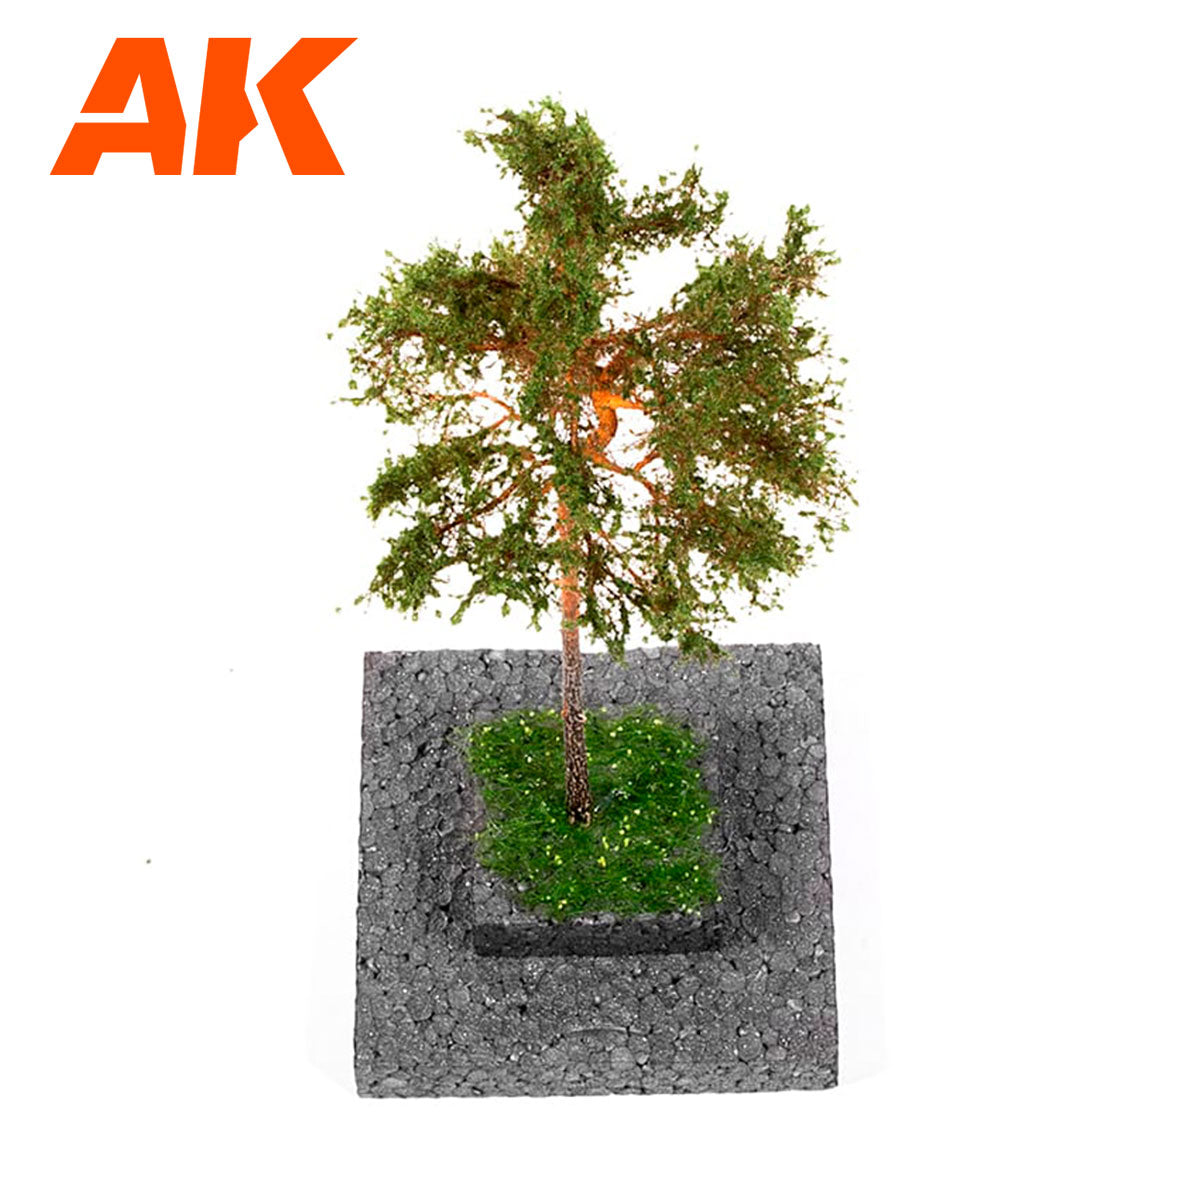 AK8177 - Pine Tree 1/72